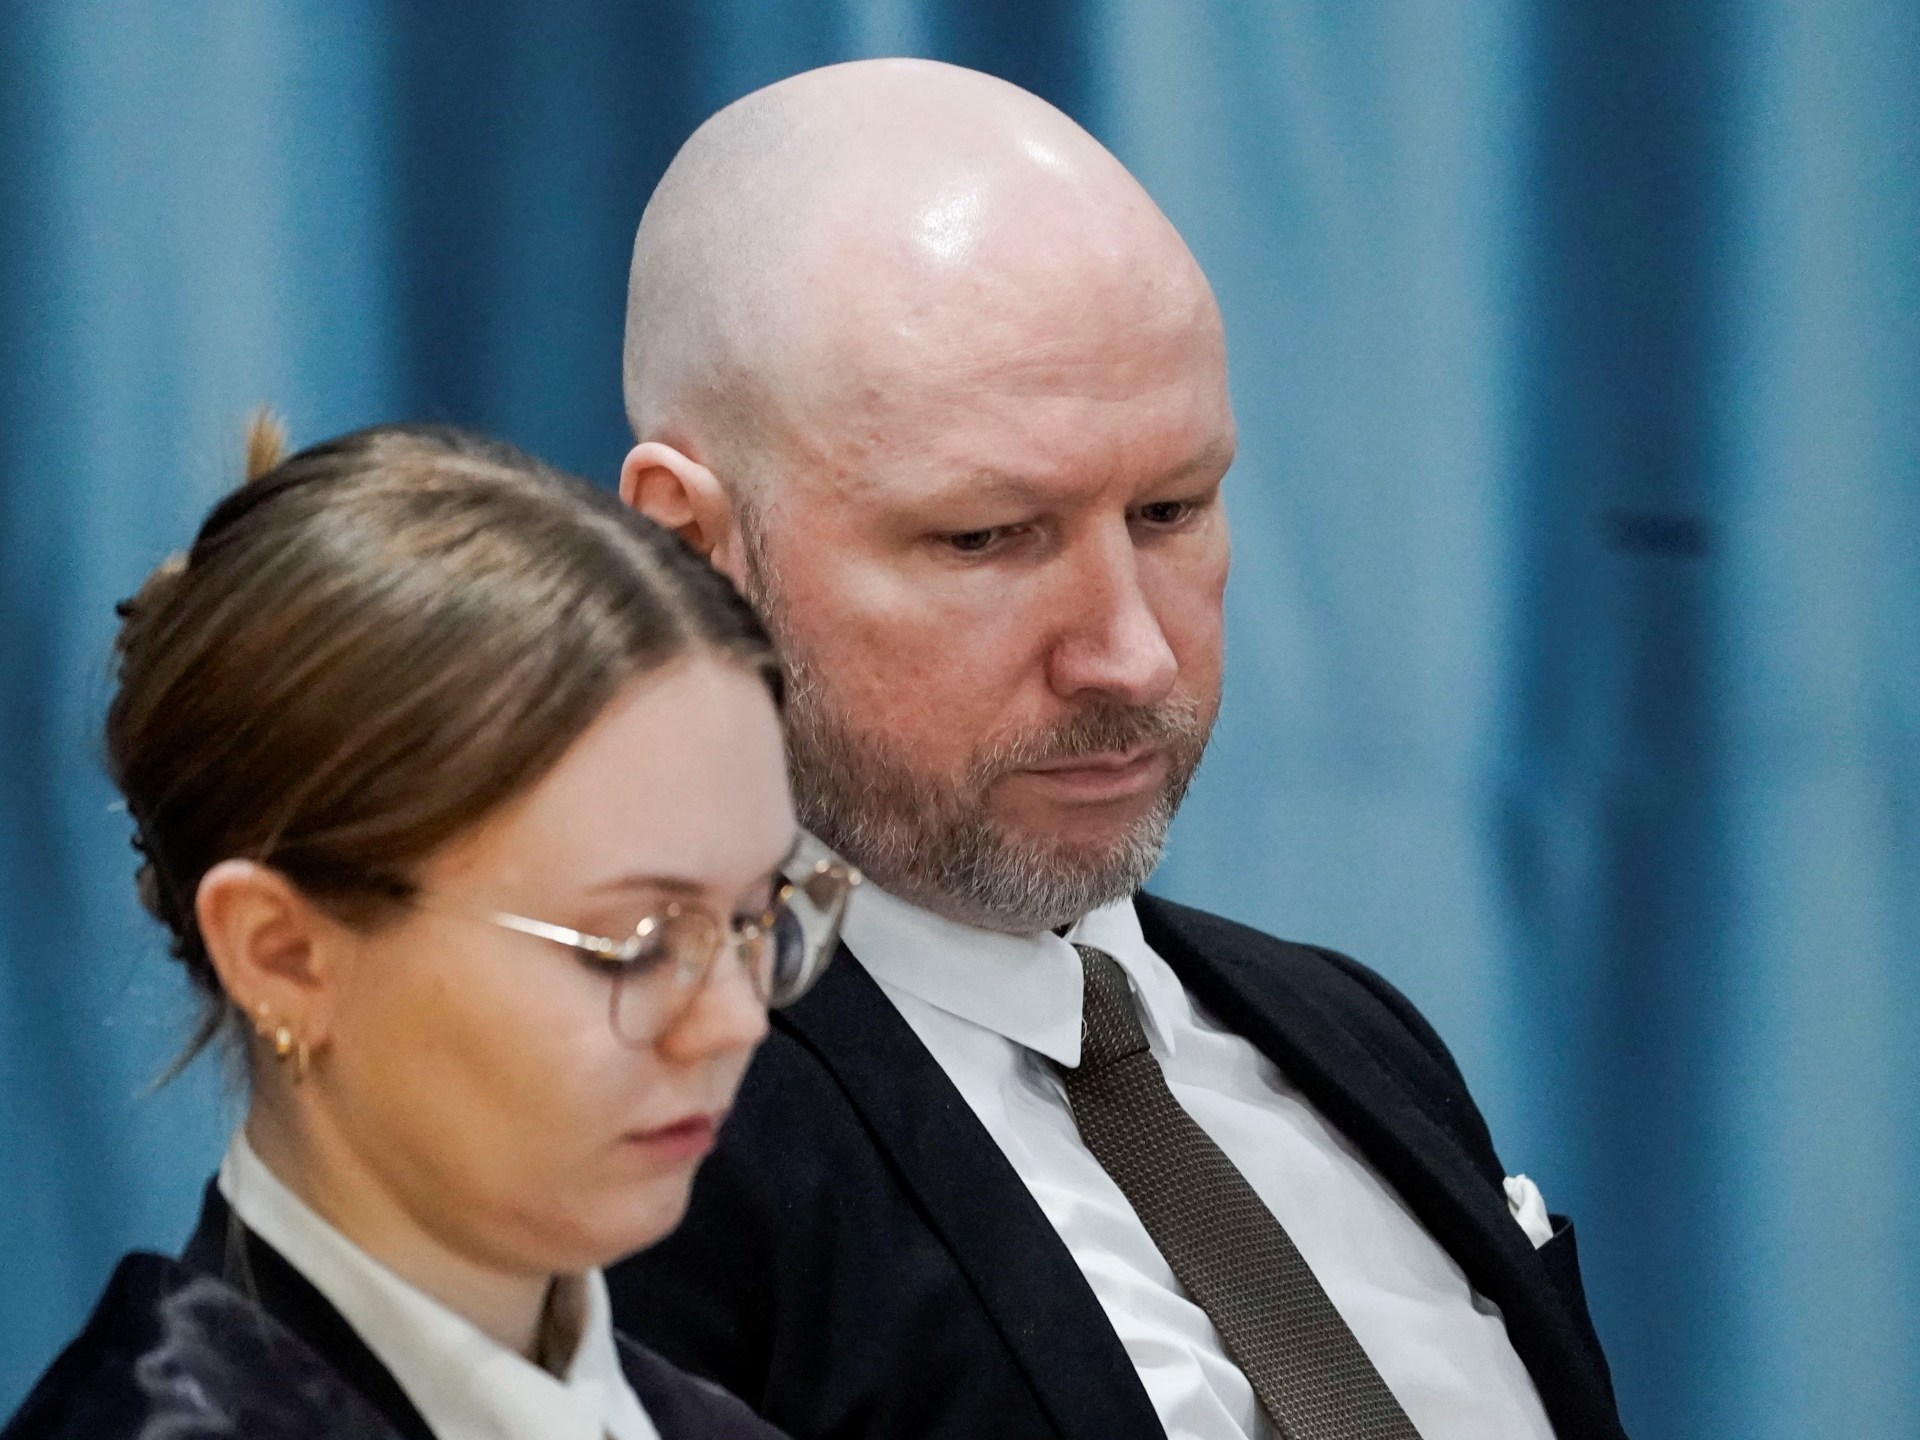 Norway court says mass killer Breivik’s prison isolation not ‘inhumane’ | Prison News